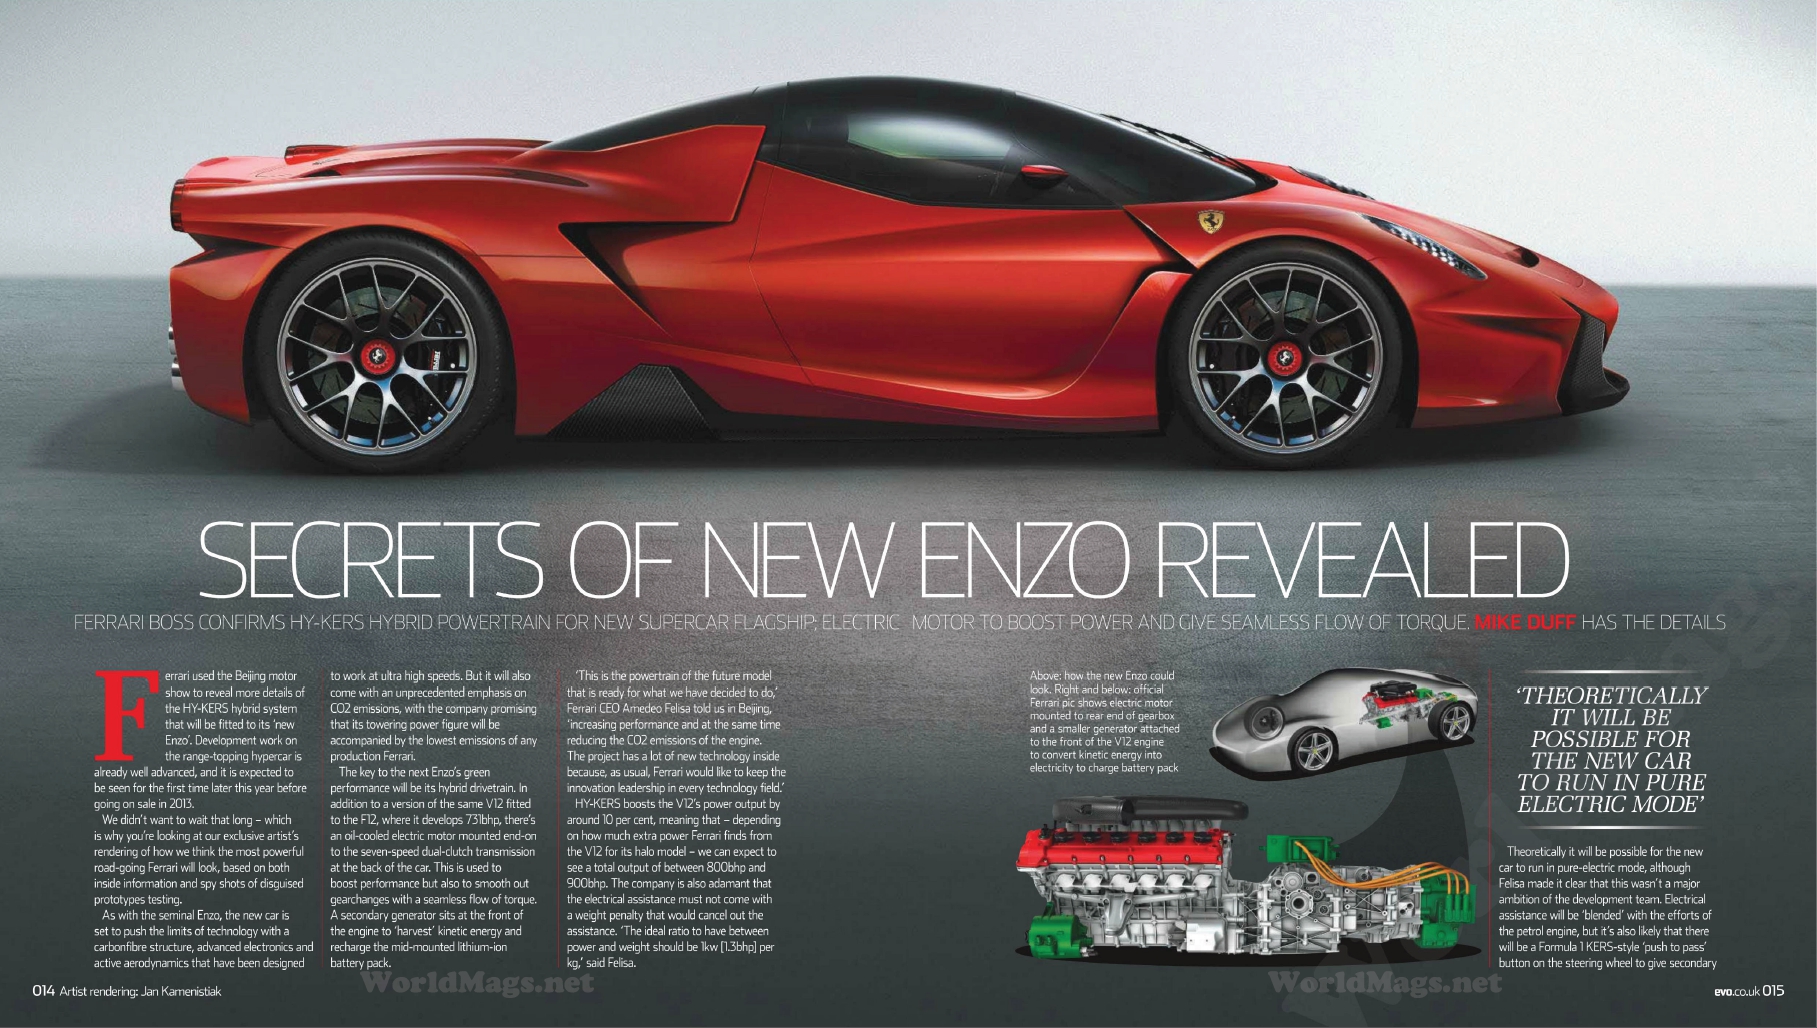 Un design révolutionnaire : la nouvelle supercar de Ferrari